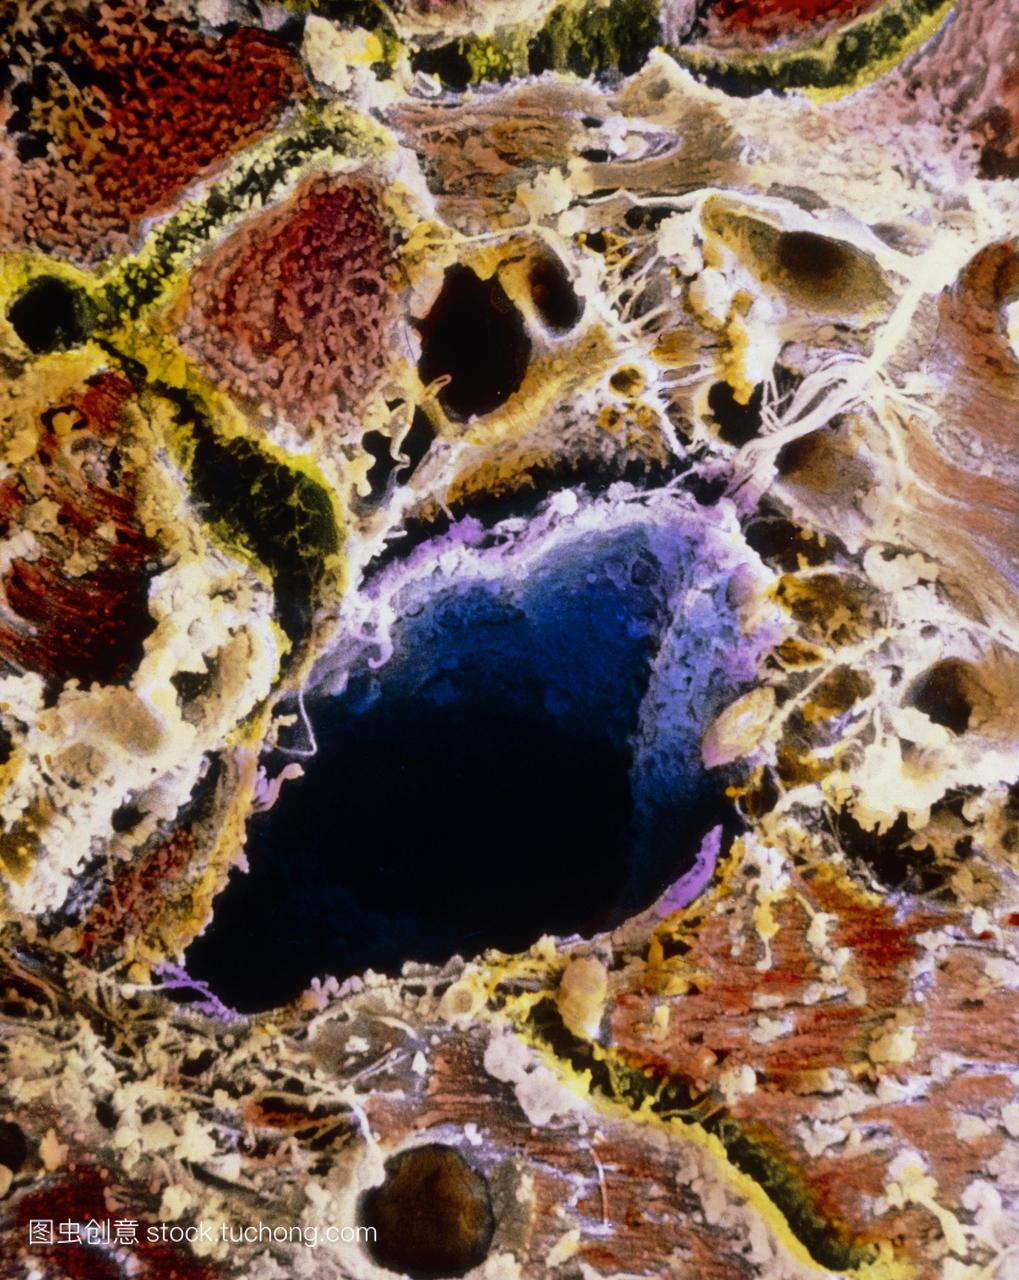 细胞结构,受到肝硬化的影响。肝细胞暗棕色围